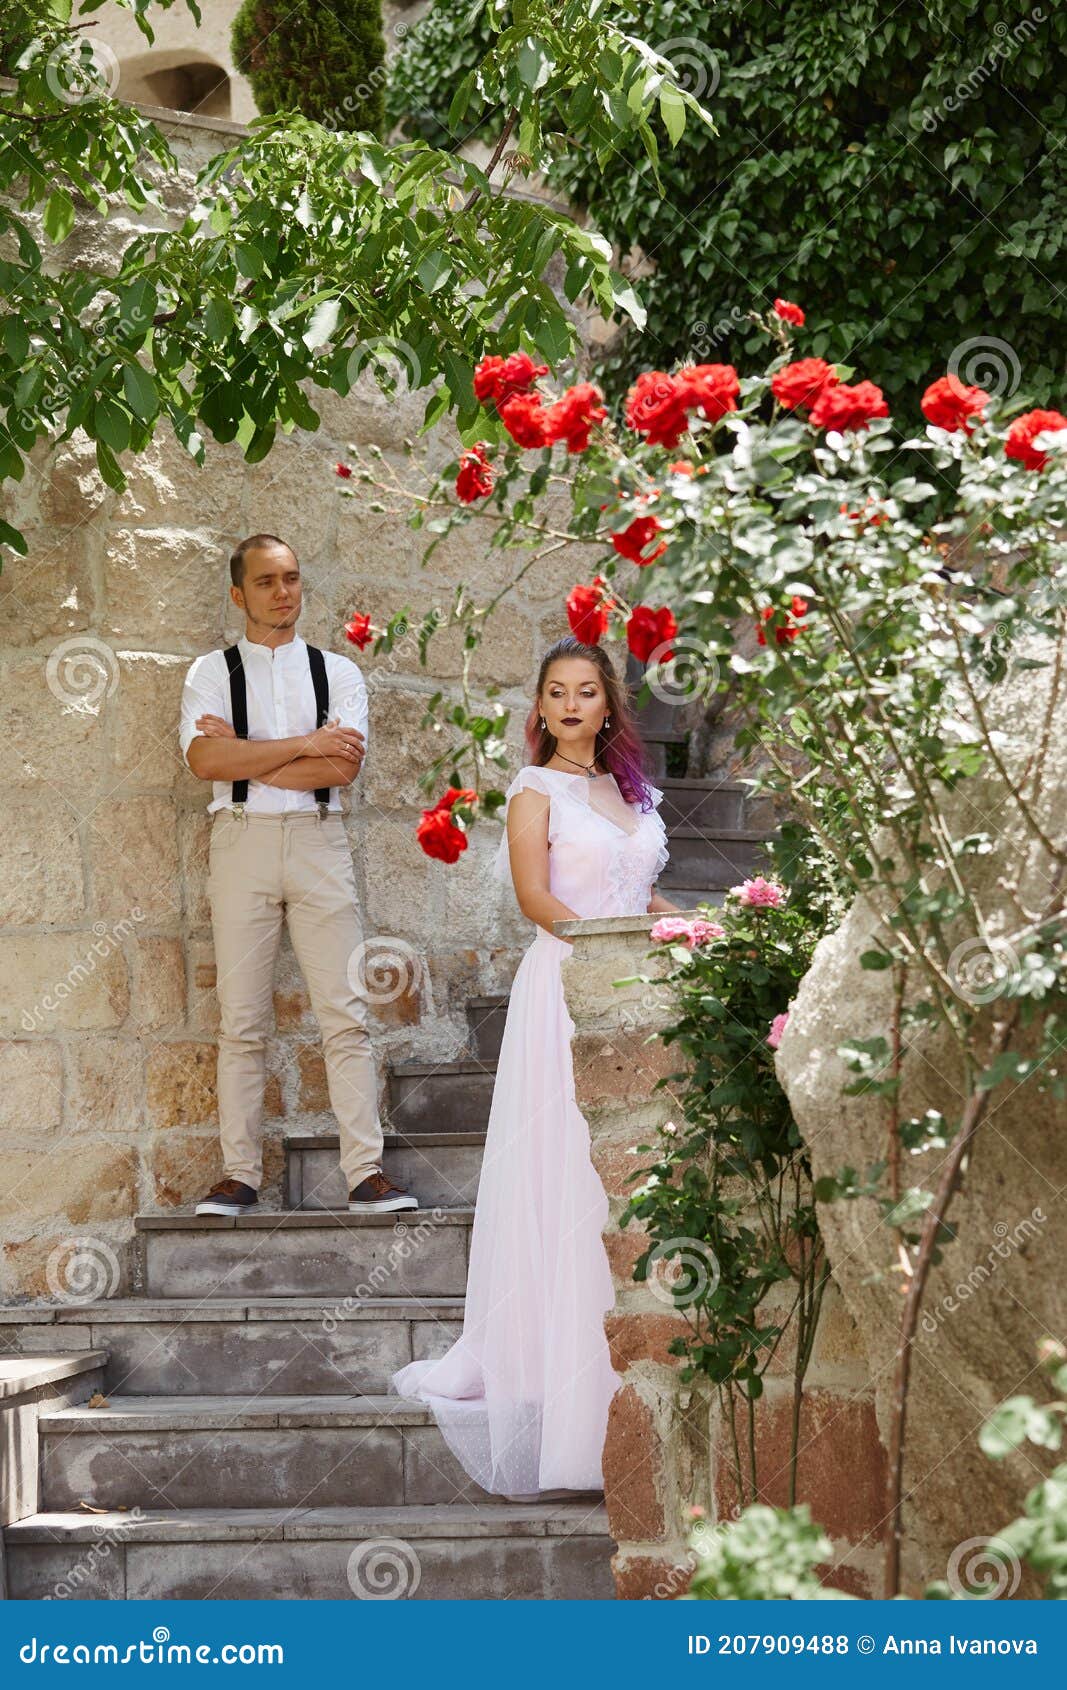 男人和女人走来抱去. 新郎新娘. 库存图片. 图片 包括有 长期, 结婚, 幸福, 白种人, 男人, 紫色 - 205948483